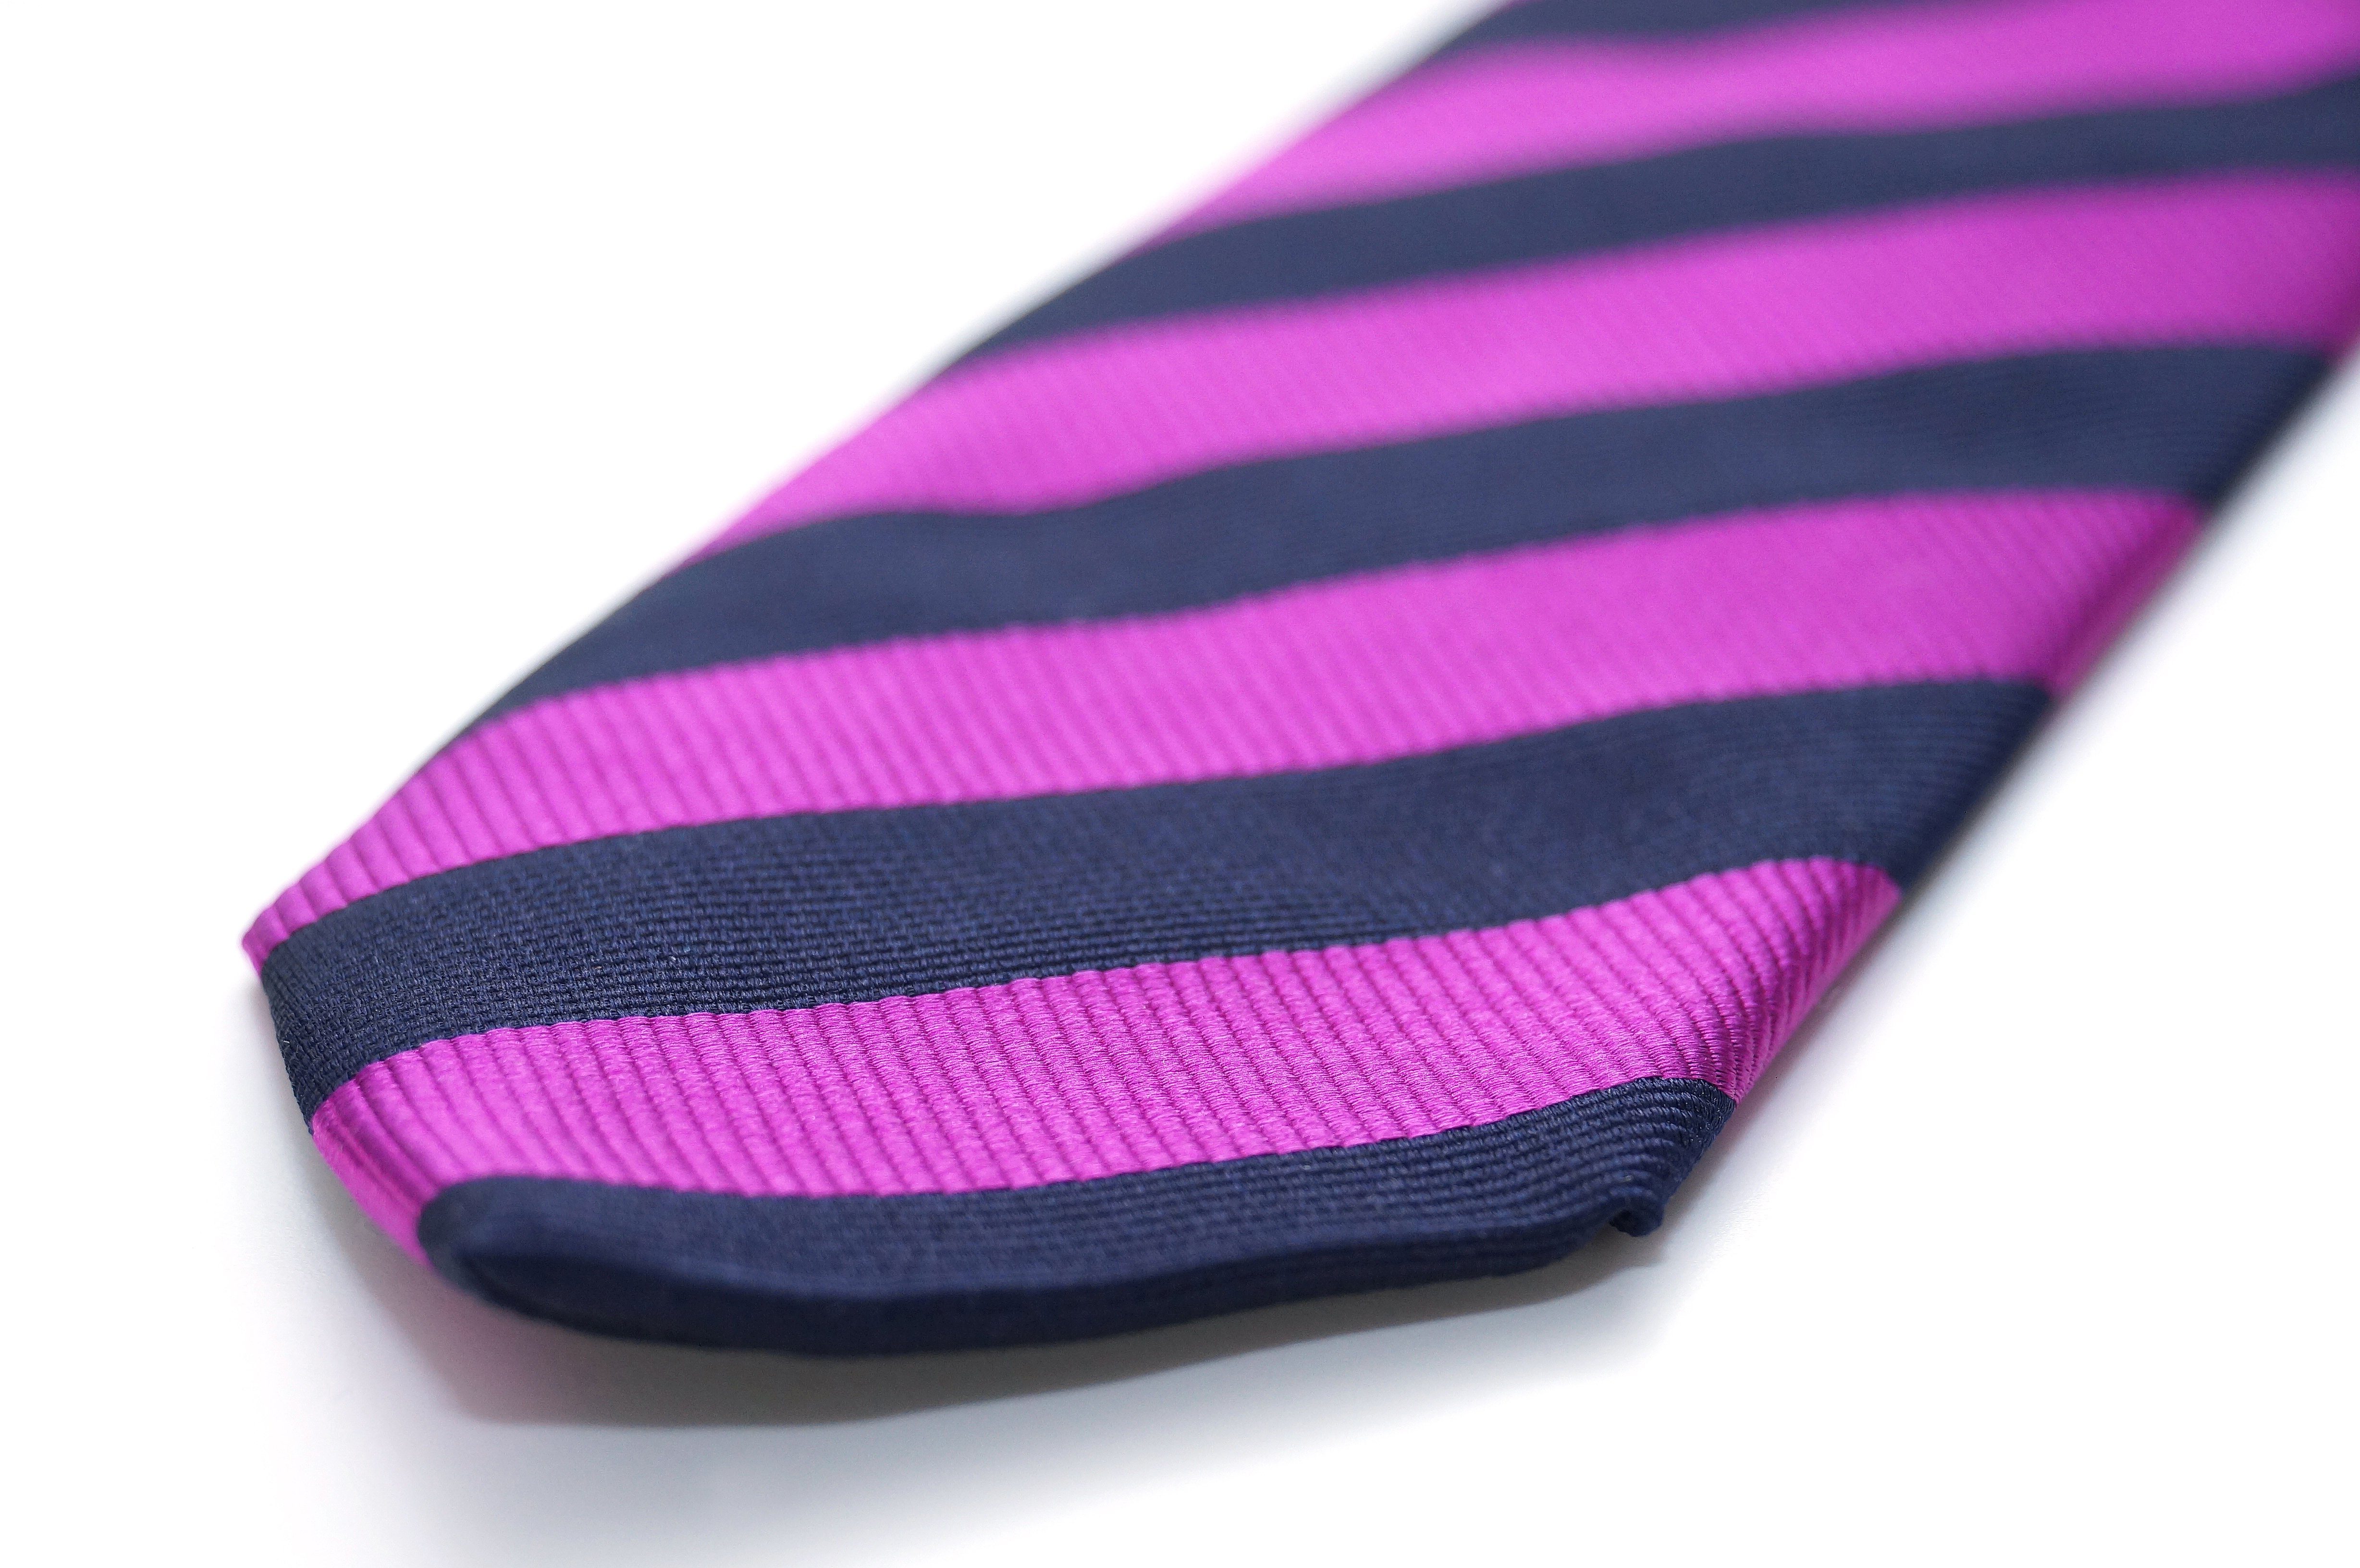 gestreift, Italy Violett-Schwarz in Chiccheria Krawatte Seide, Brand Made aus